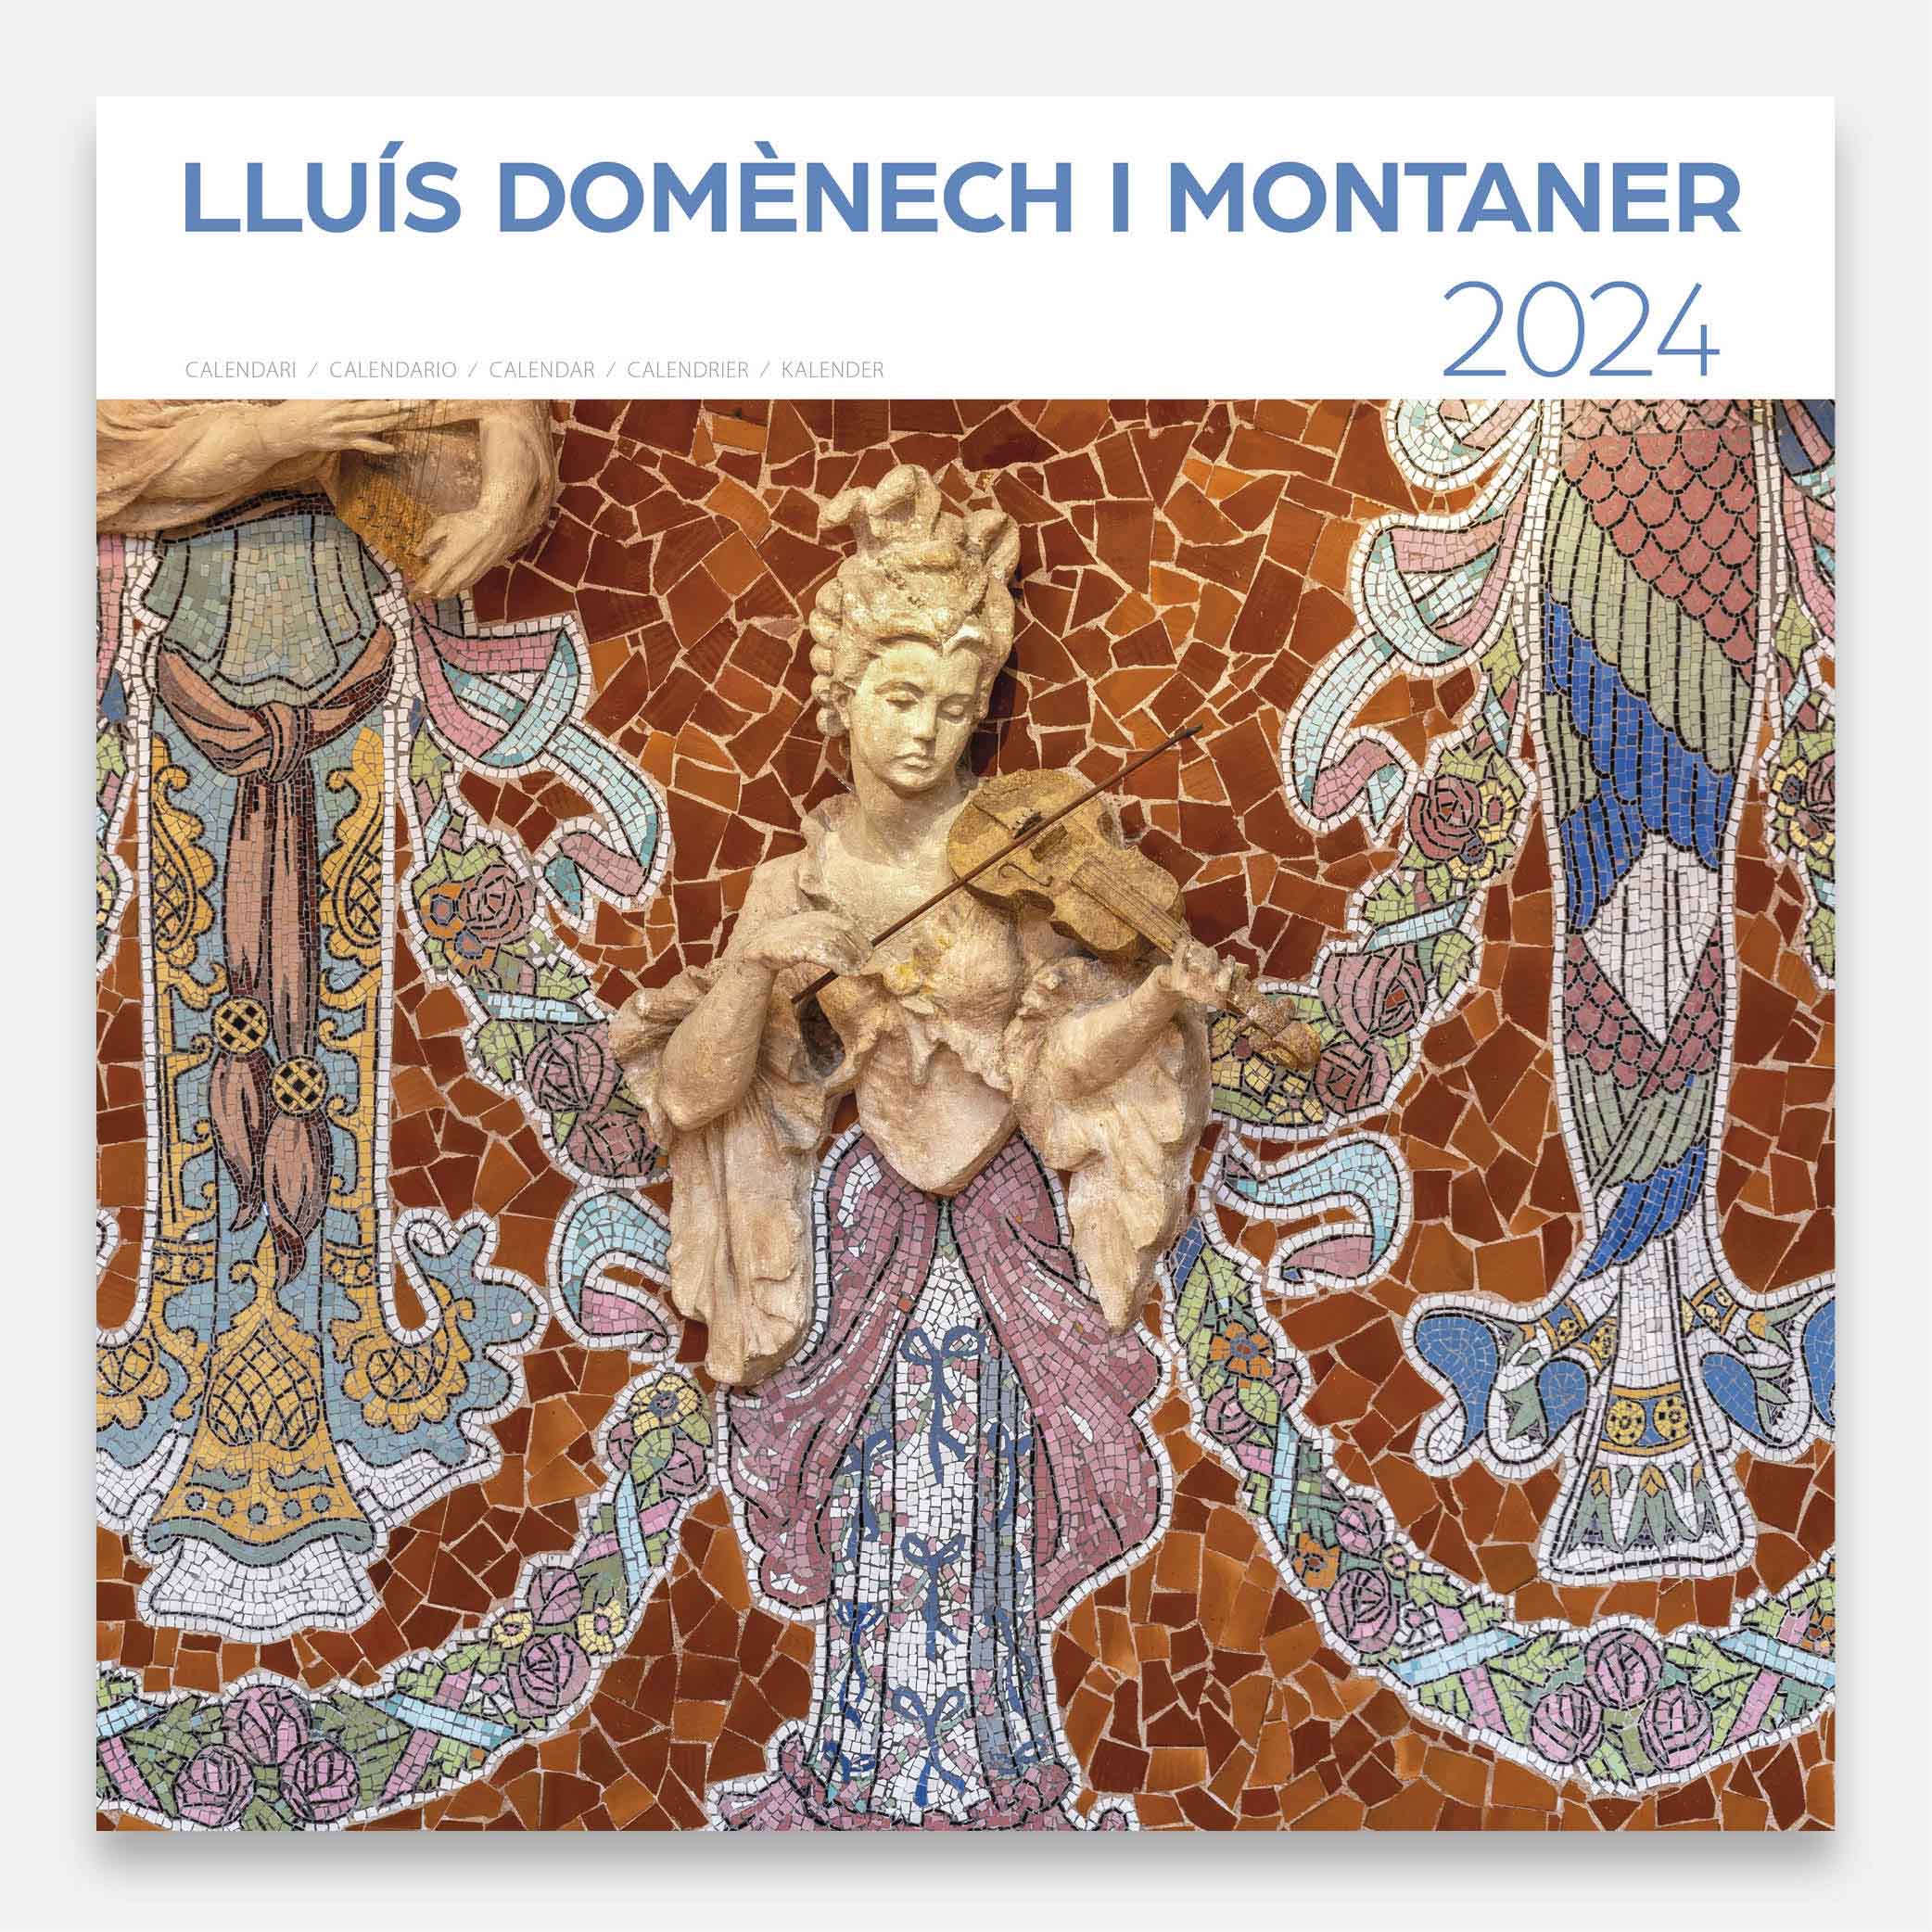 Lluís Domènech i Montaner (A) 24dmg1a calendario pared 2024 lluis domenech